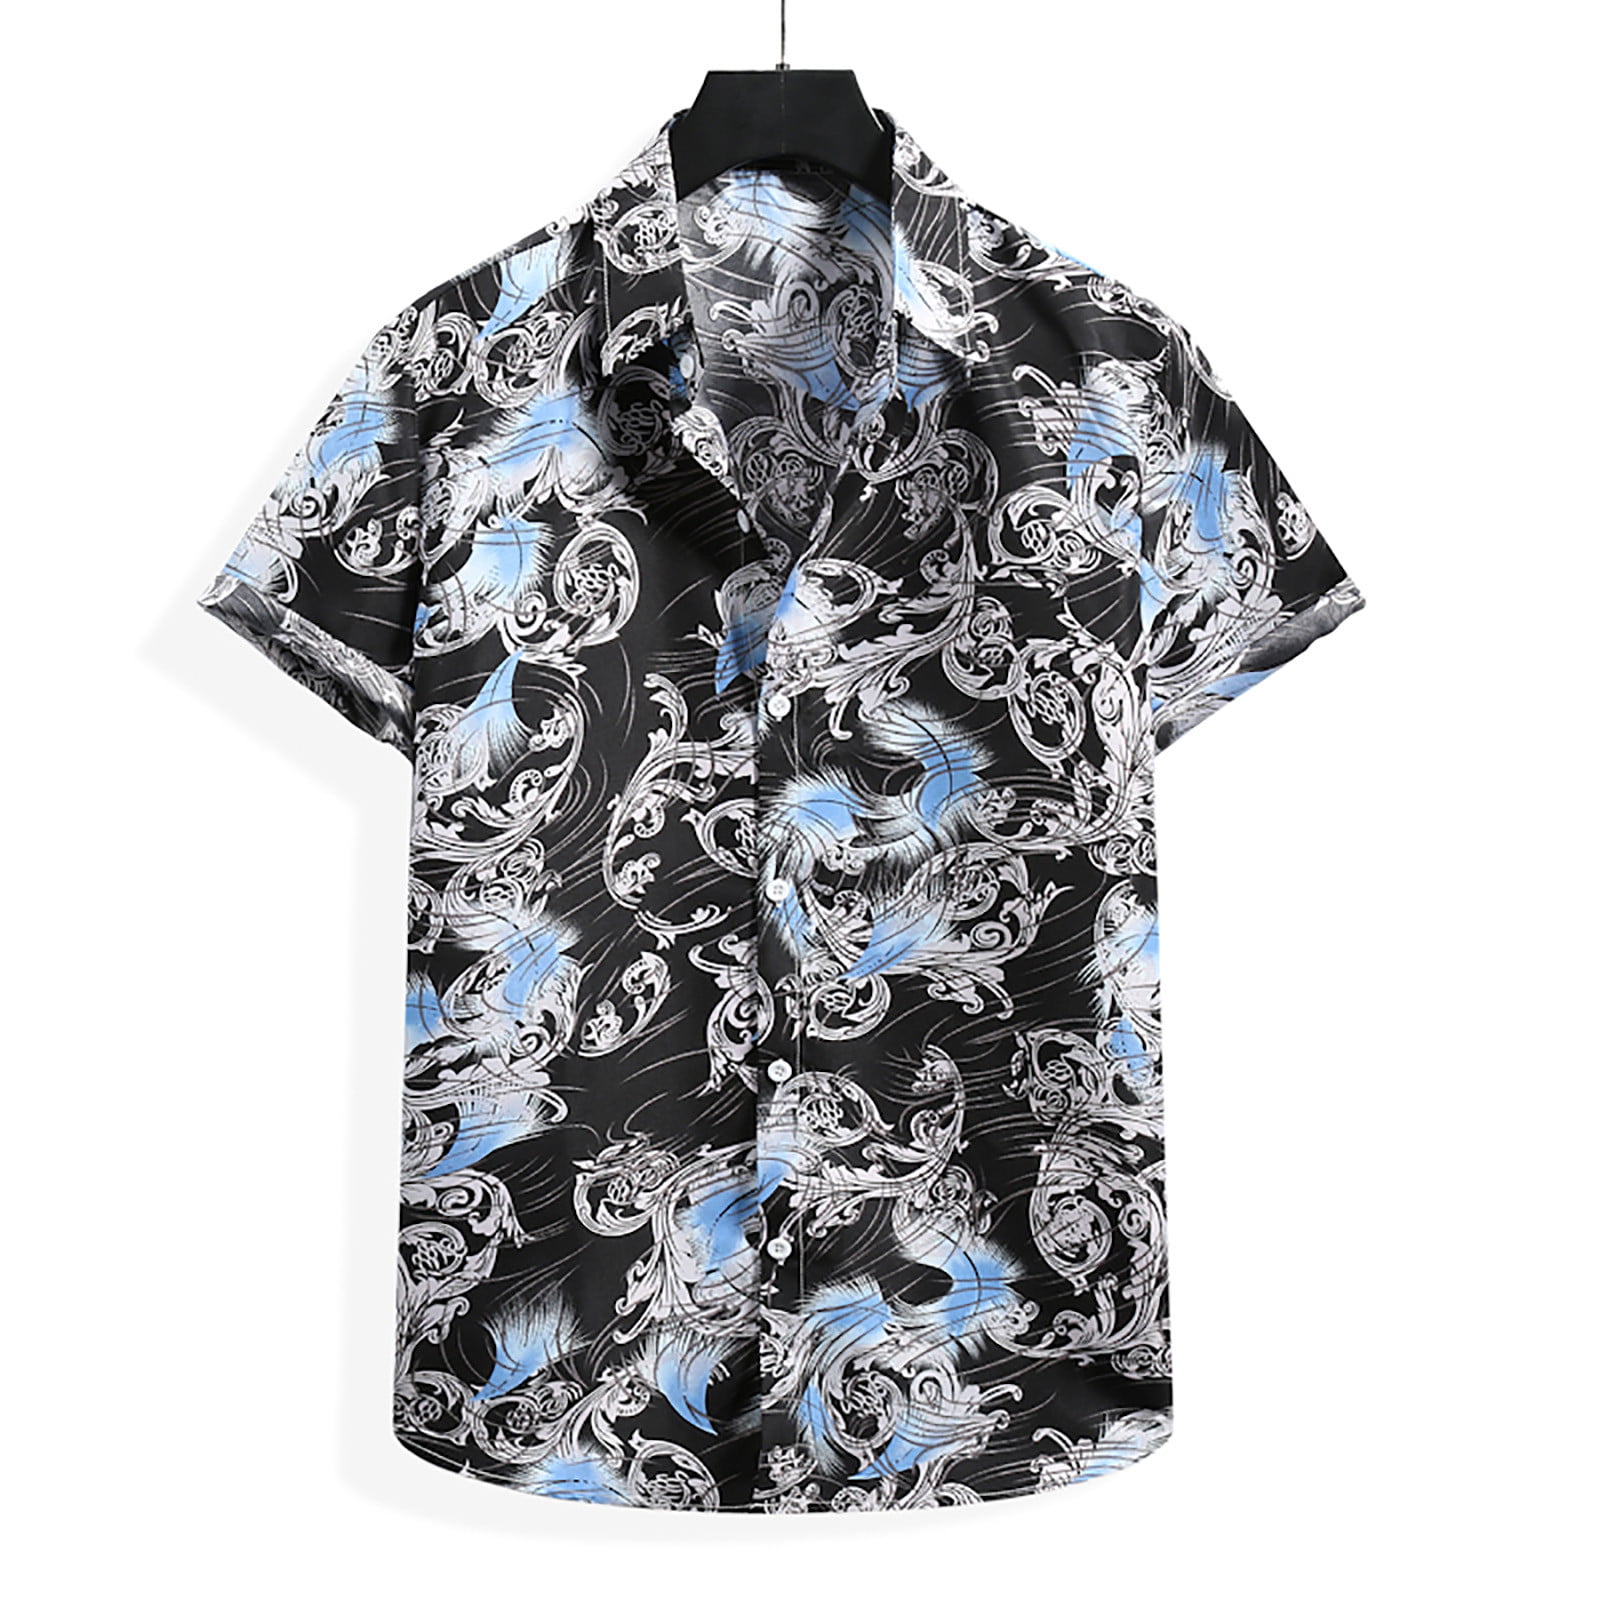 BYWX Men Hawaiian Casual Short Sleeve Beach Button Front Shirts